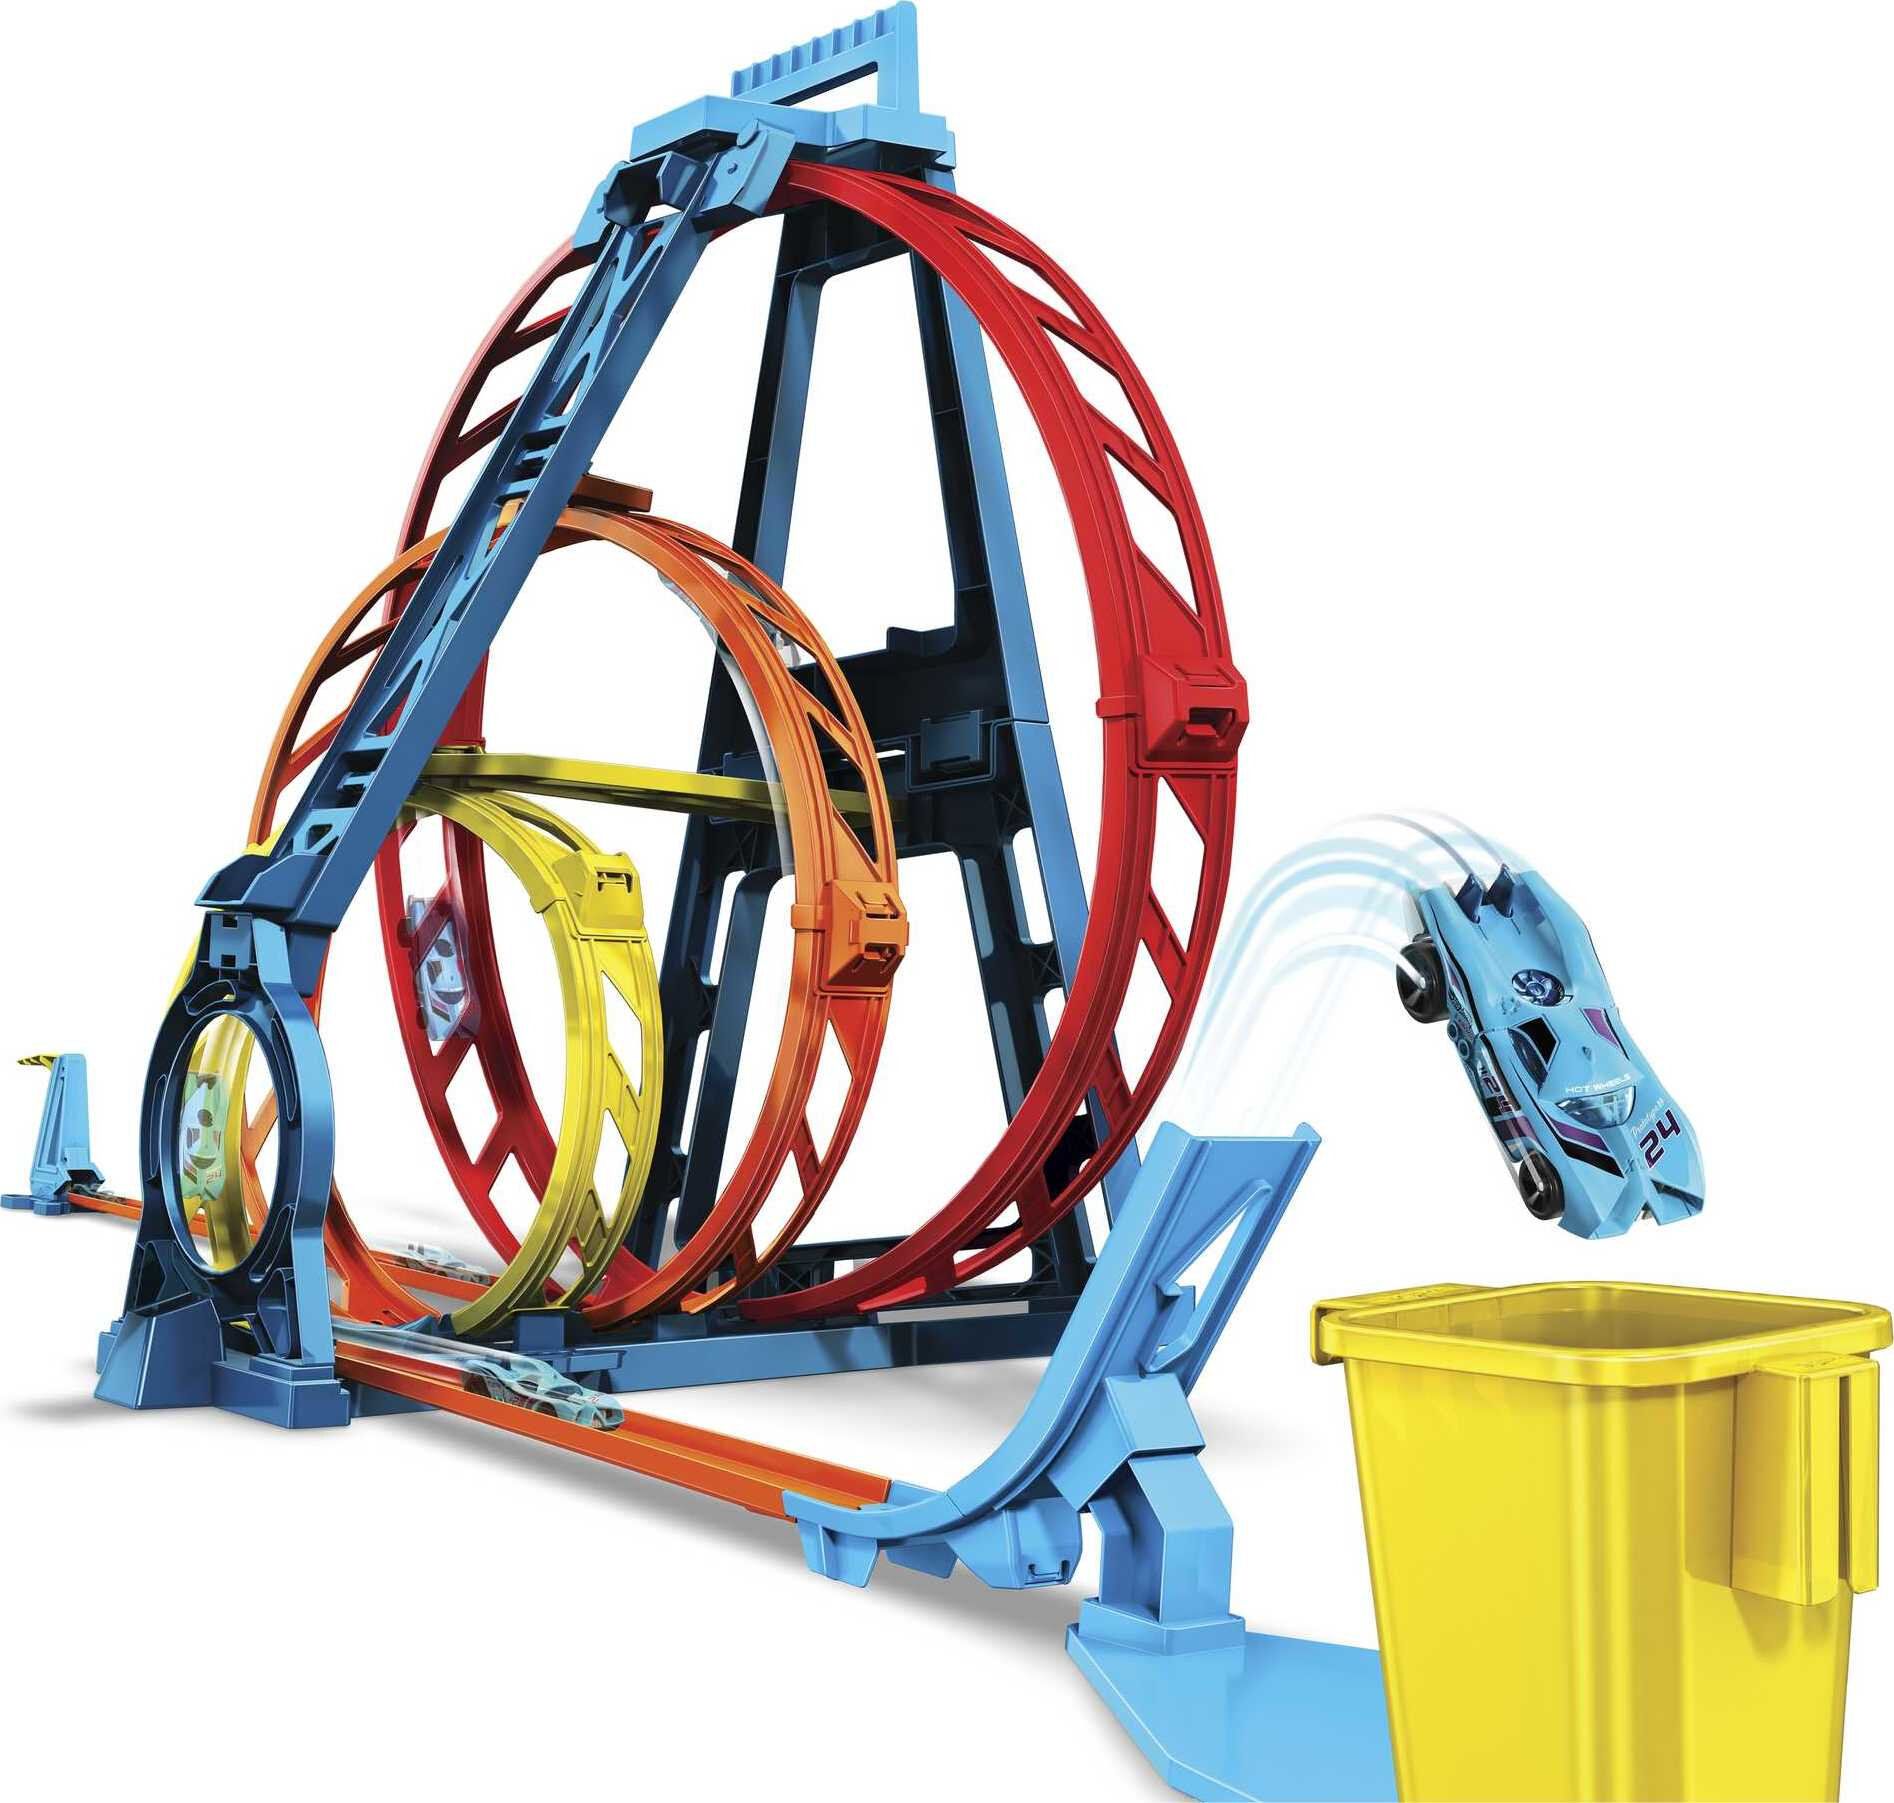 Hot Wheels Track Builder Triple Loop Stunt Playset, 1:64 Scale Vehicles​ - image 4 of 7